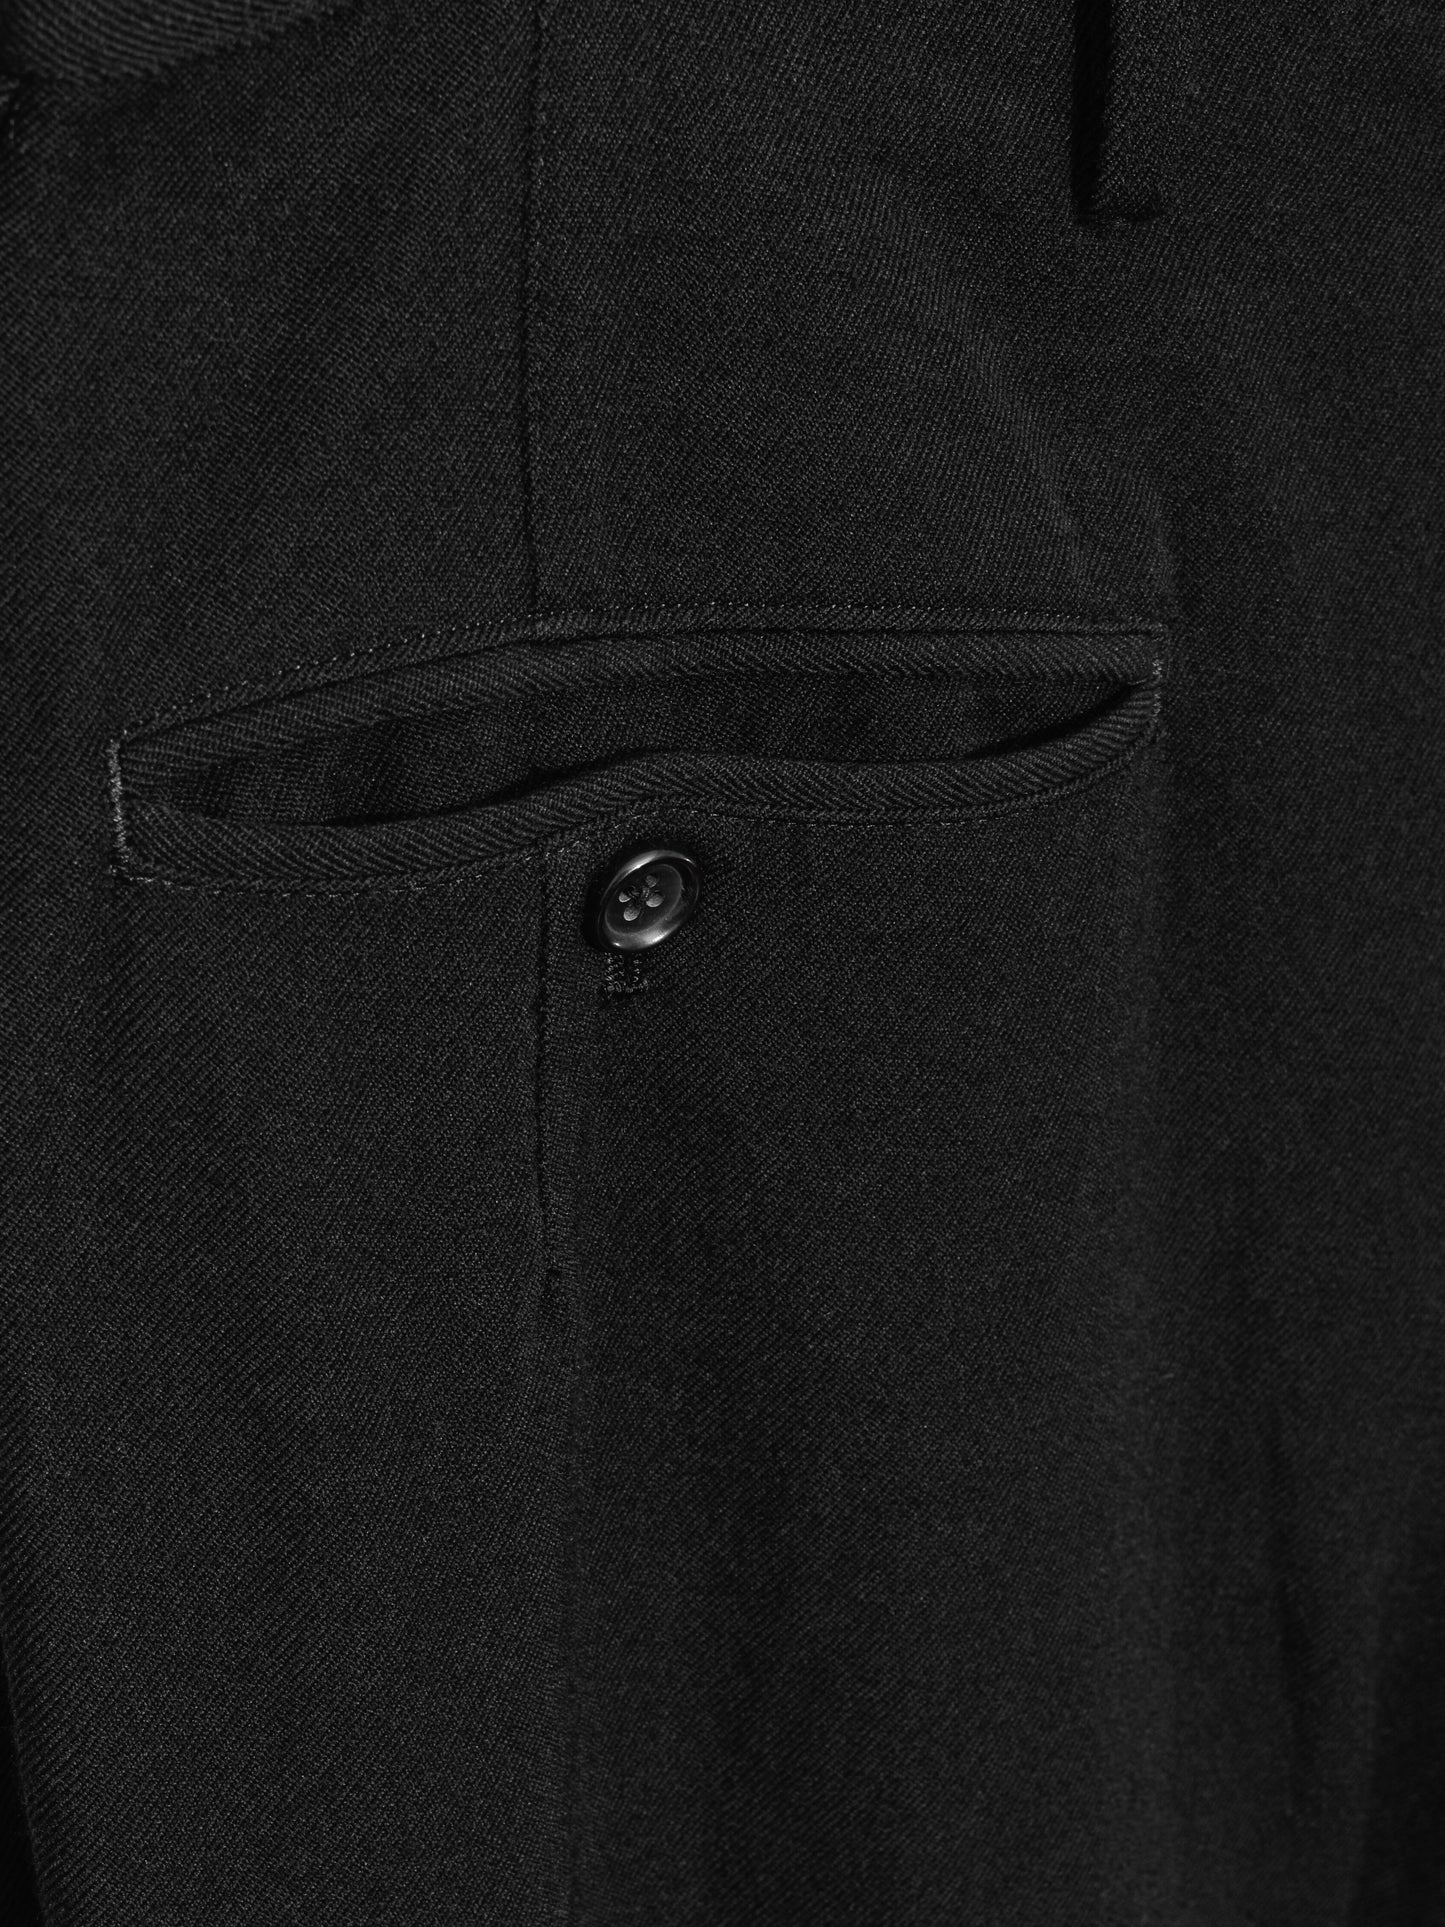 suspender trousers black ∙ wool ∙ medium